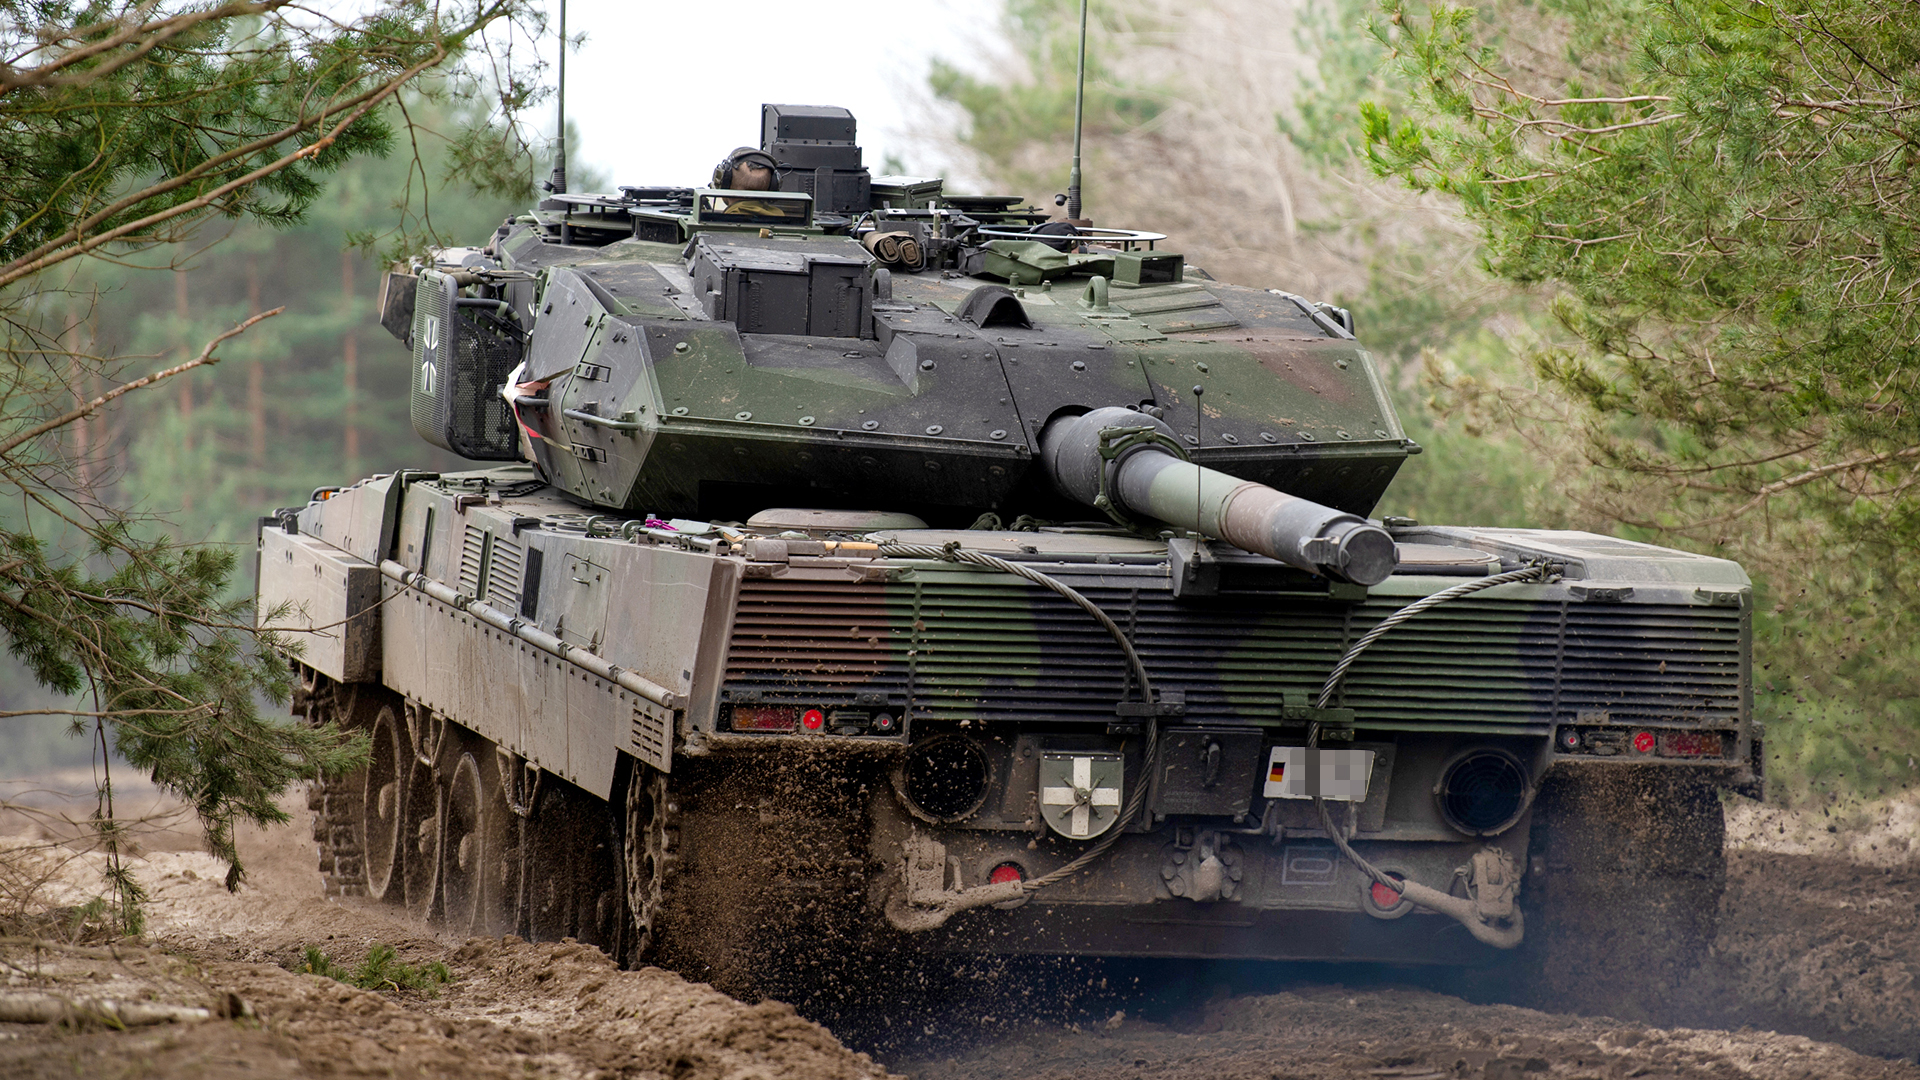  Ein Kampfpanzer vom Typ Leopard 2 A7V Bundeswehr fährt während einer Übung auf dem Truppenübungsplatz. | dpa